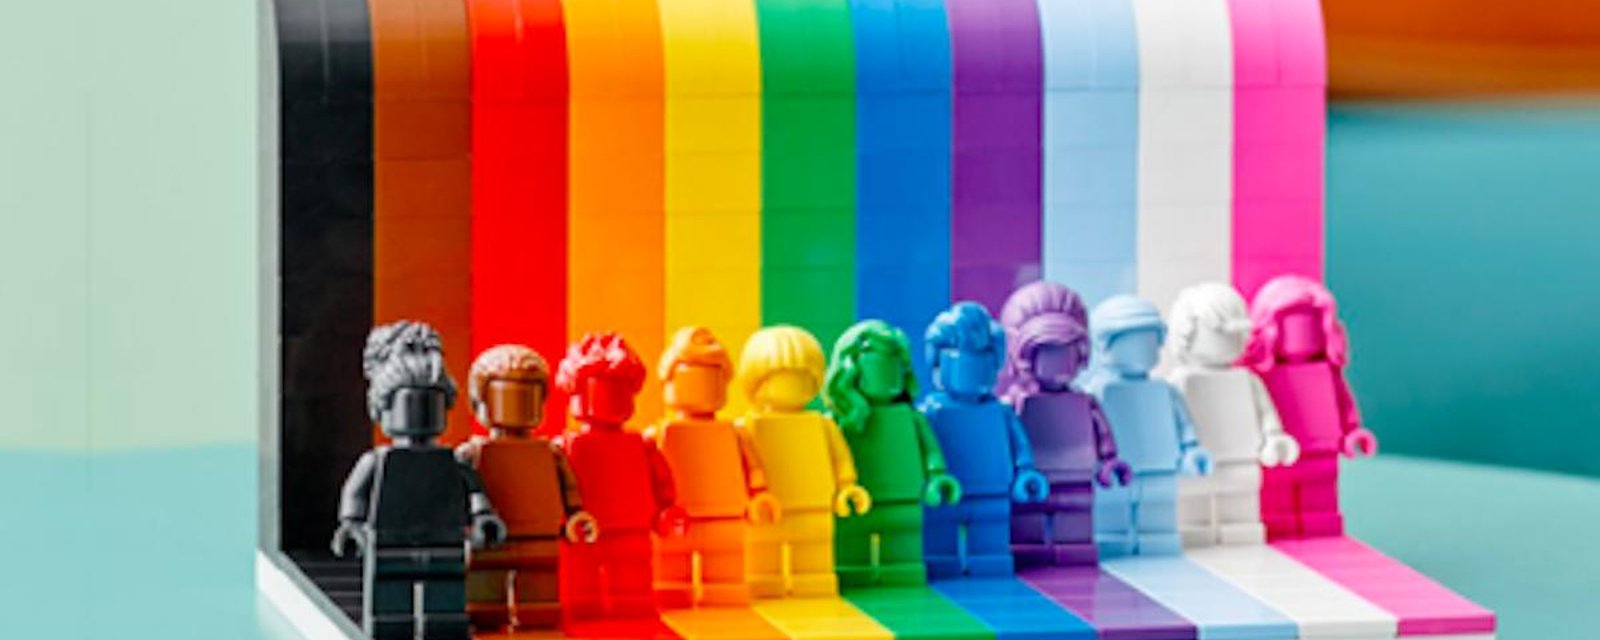 LEGO crée un ensemble de briques aux couleurs LGBT+ 